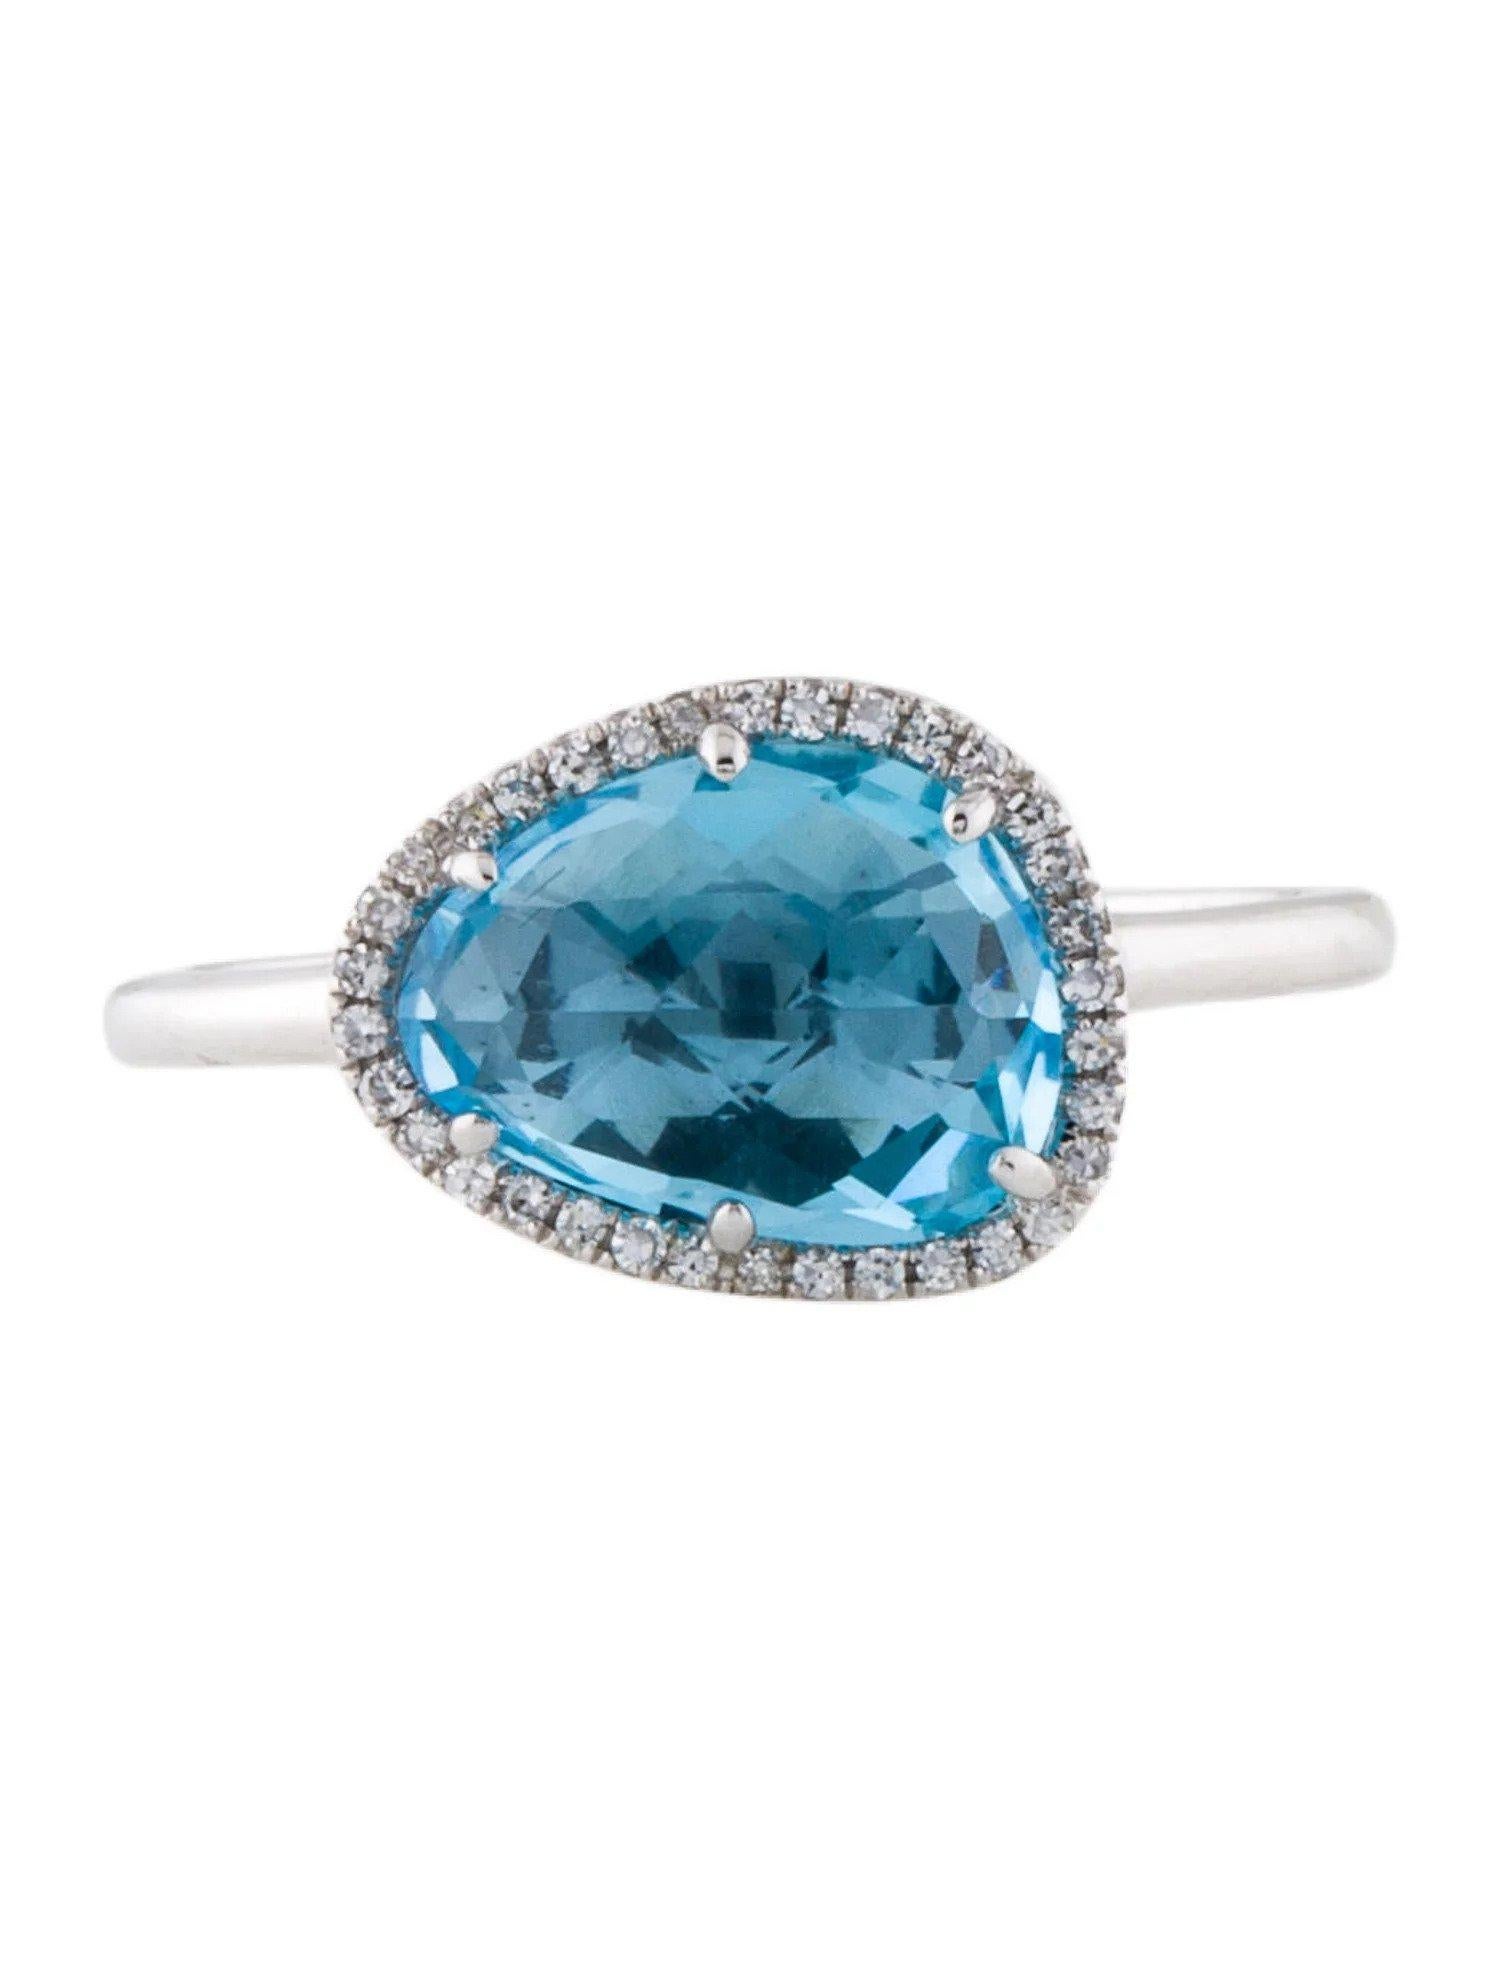 Dieser Schweizer Blautopas- und Diamantring ist ein wunderschönes und zeitloses Accessoire, das jedem Outfit einen Hauch von Glamour und Raffinesse verleiht. 

Dieser Ring besteht aus einem 2,69 Karat Schweizer Blautopas (12 x 9 MM) mit einem